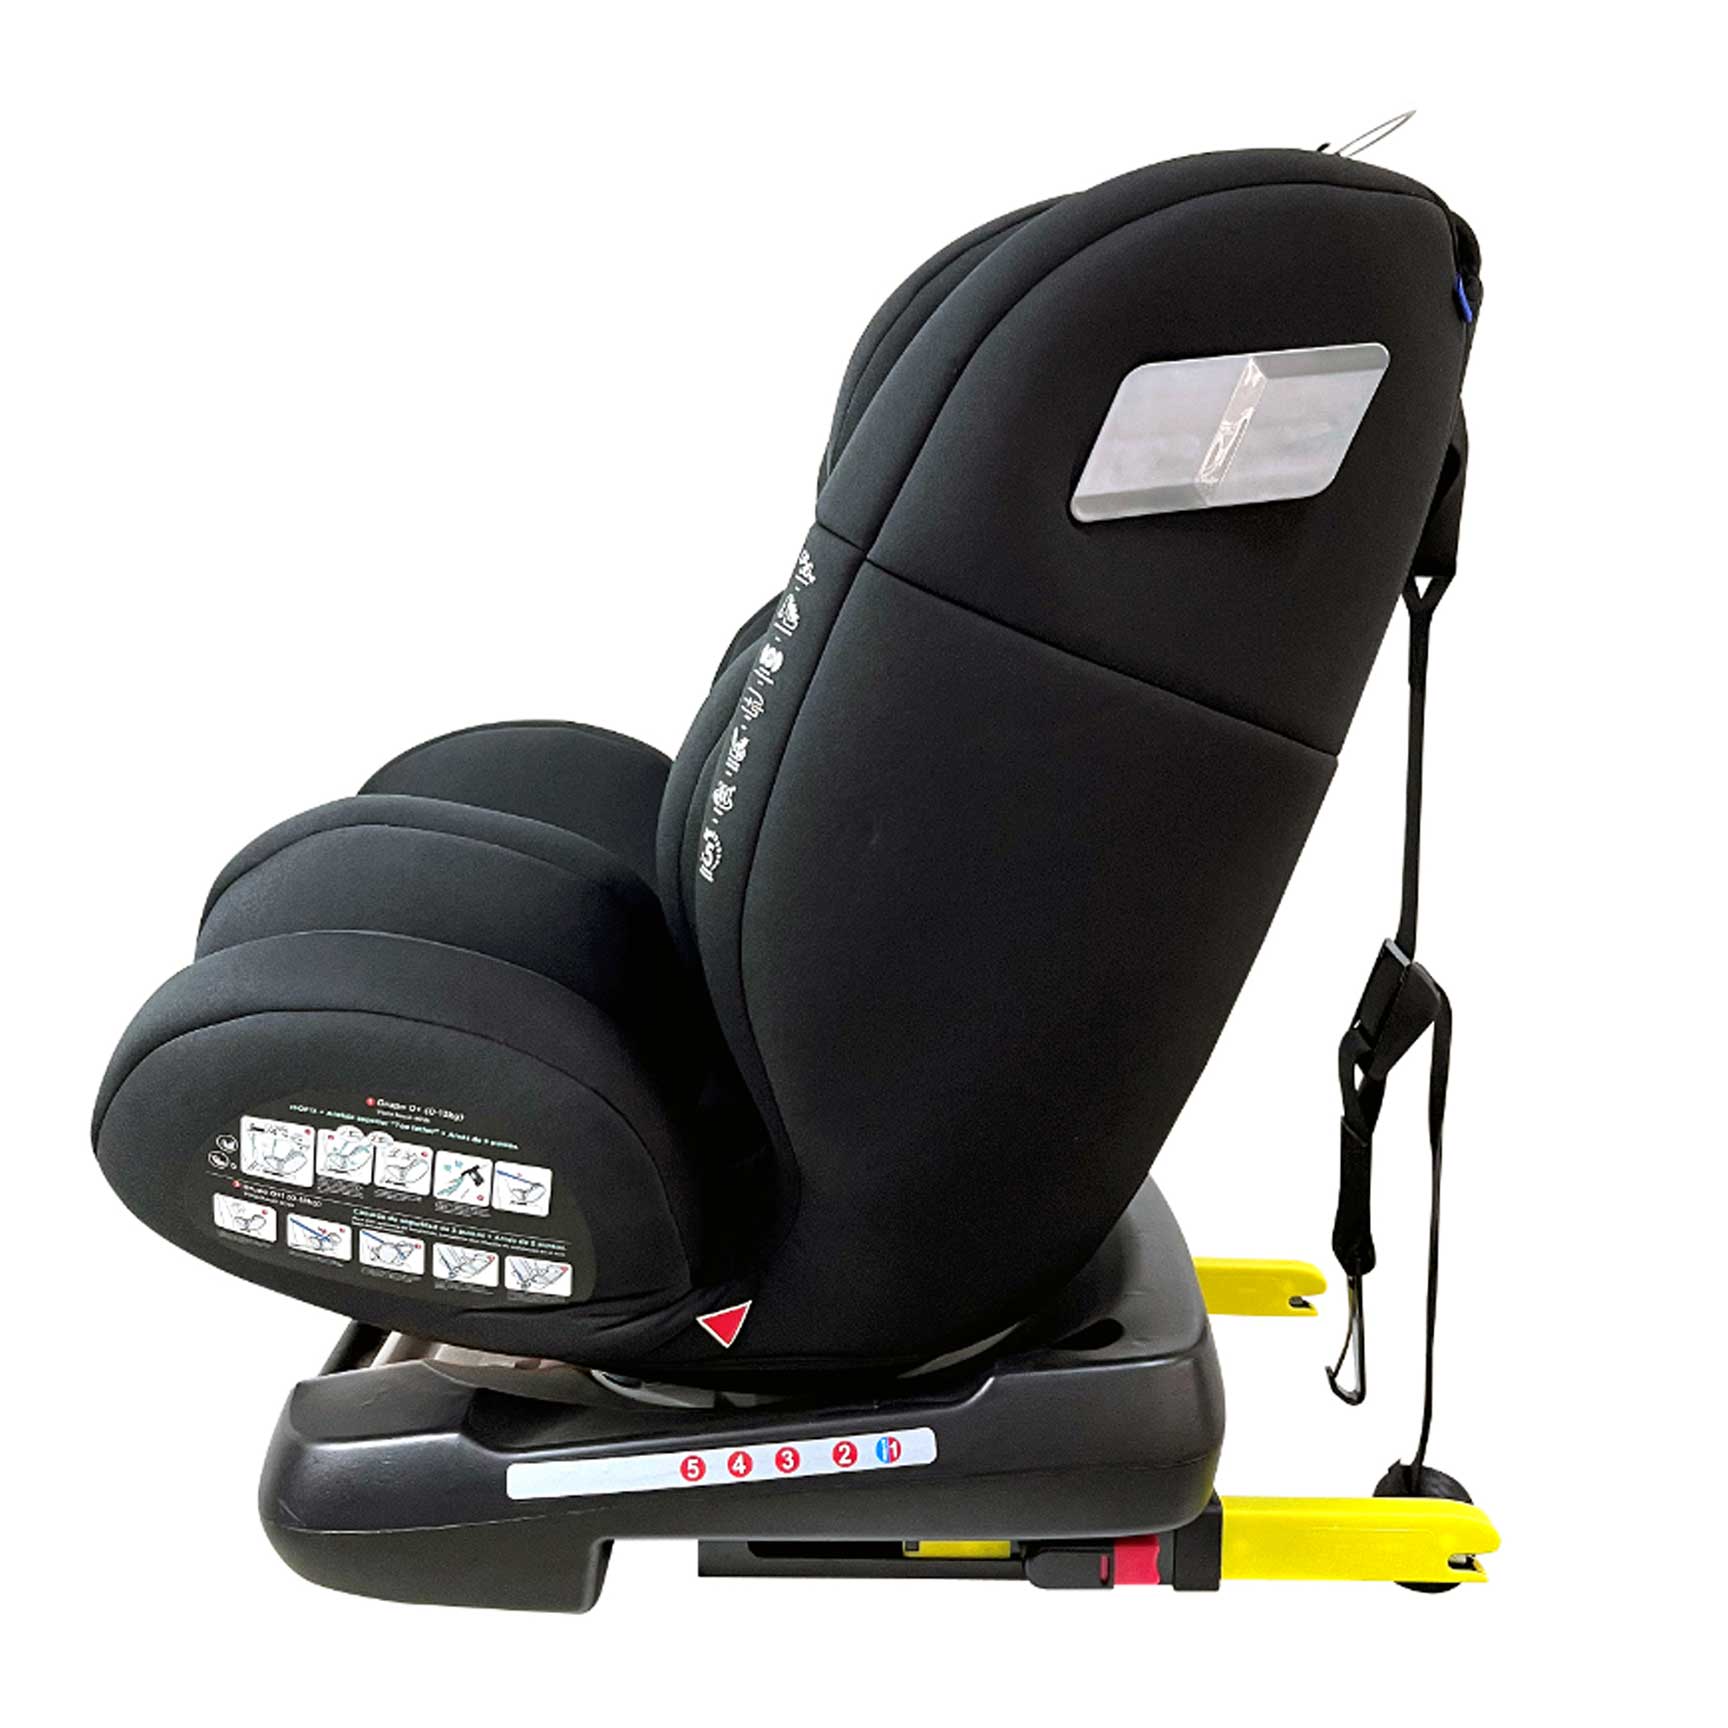 Cozy N Safe baby car seats Cozy N Safe Apollo 360 Group 0+/1/2/3 Car Seat EST-308-Apollo